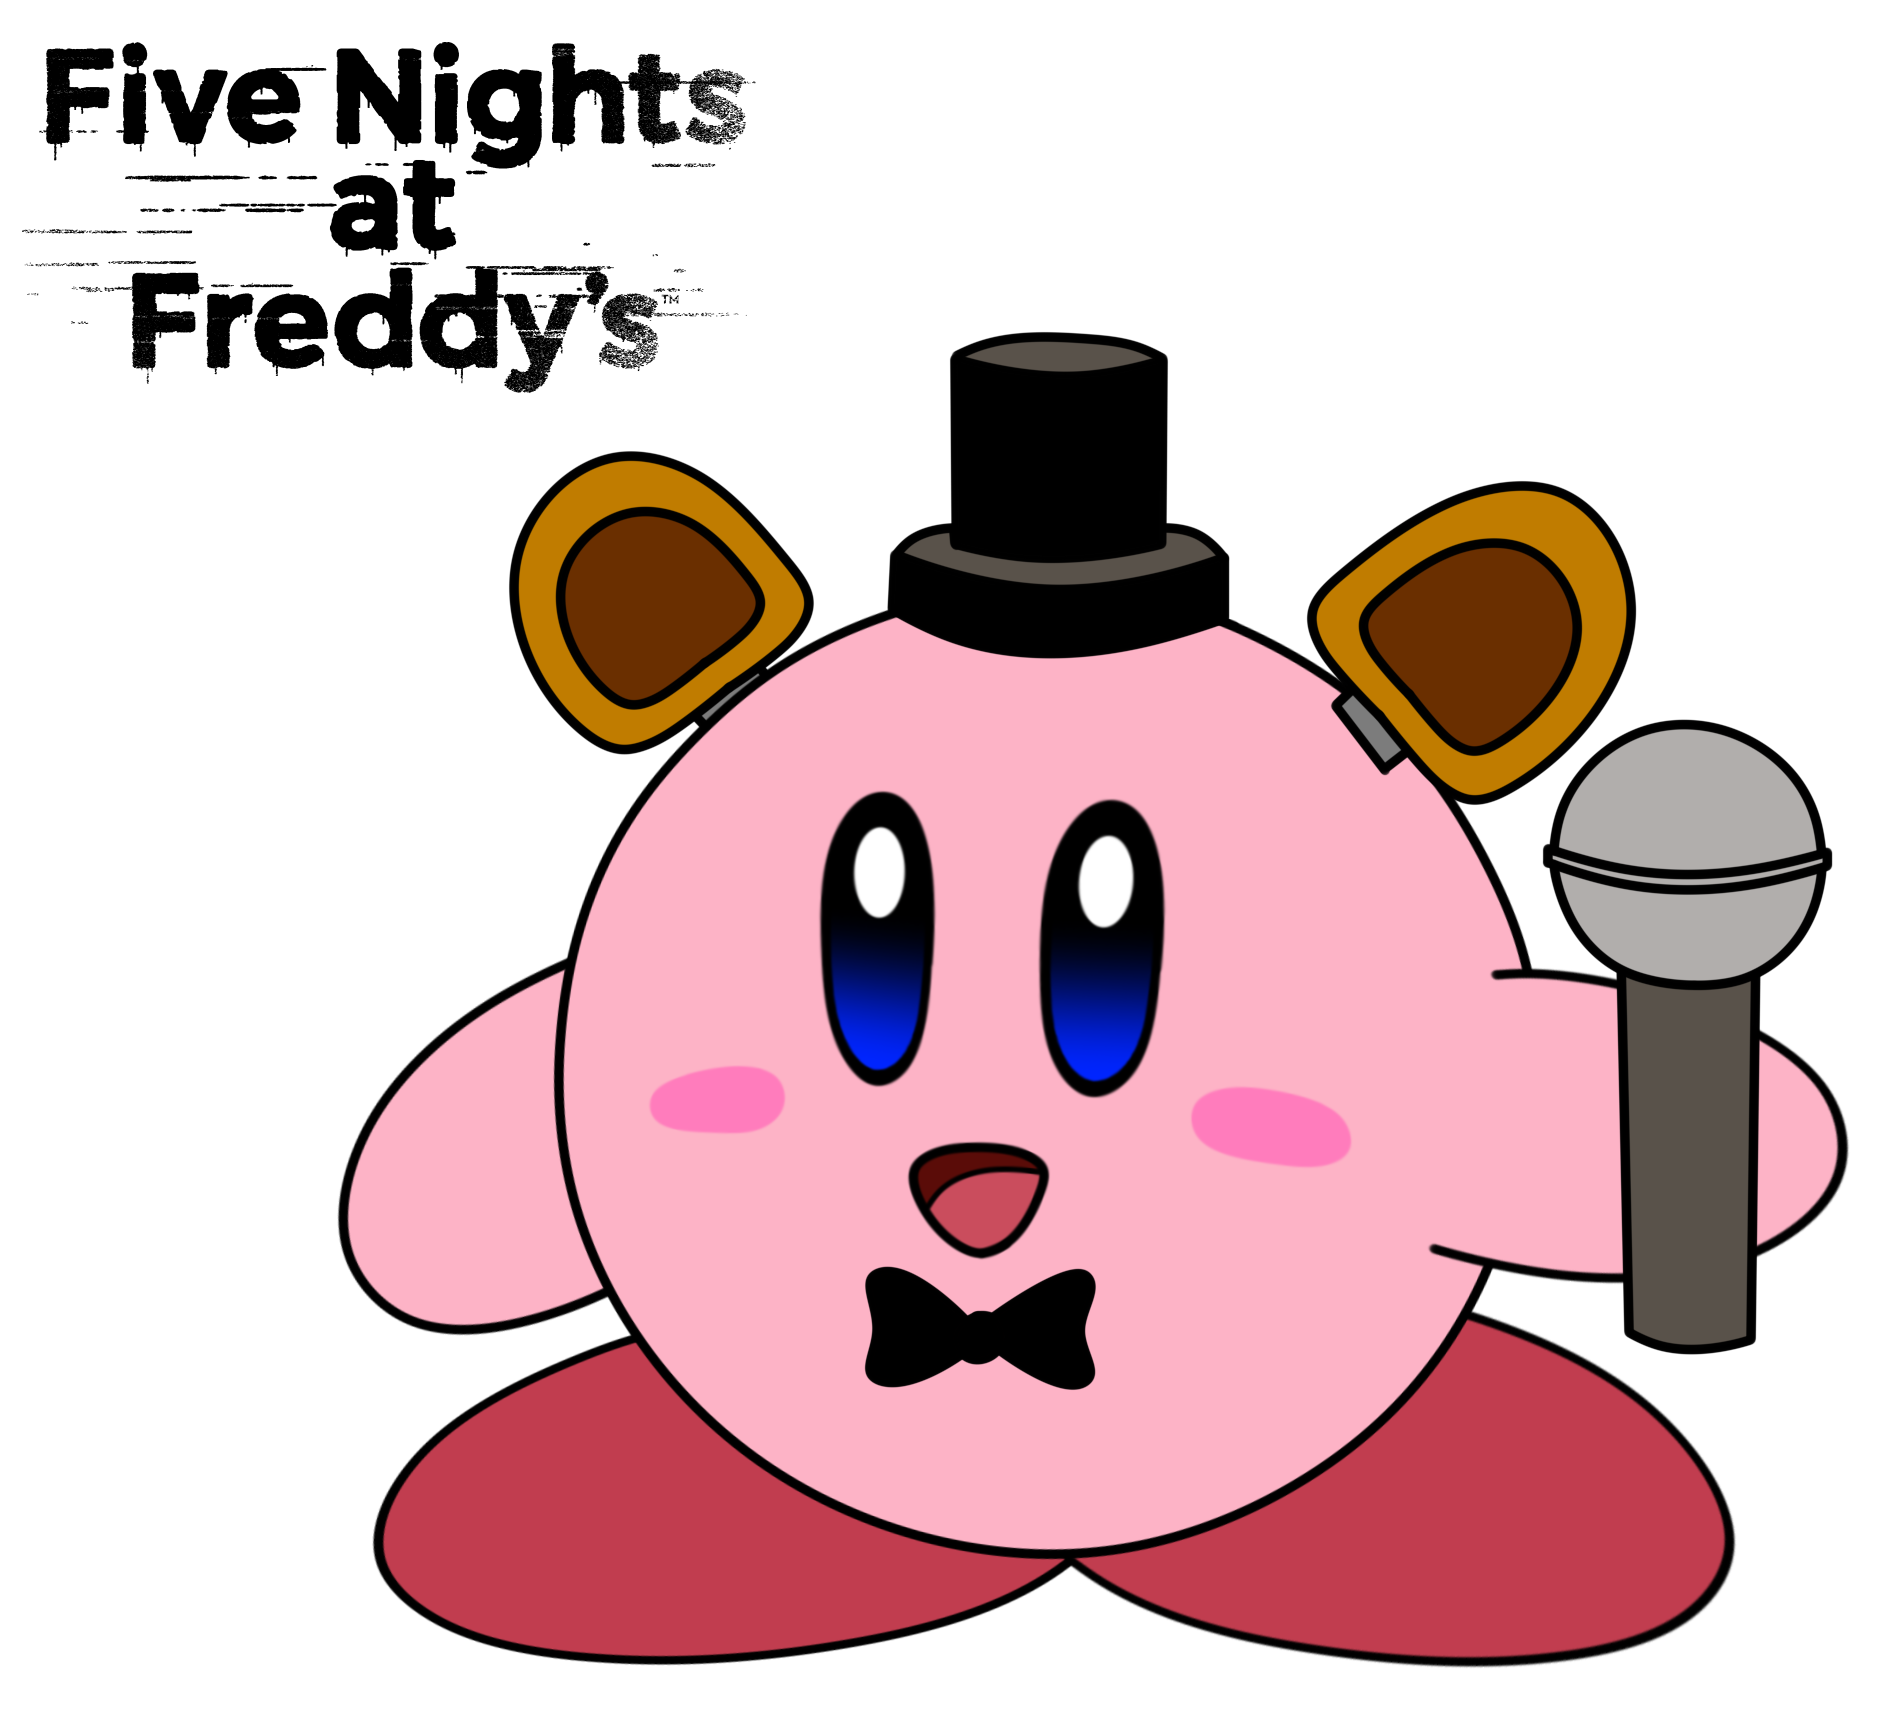 Five Nights at Freddy's Art Card 1 Freddy Fazbear by kevinbolk on DeviantArt